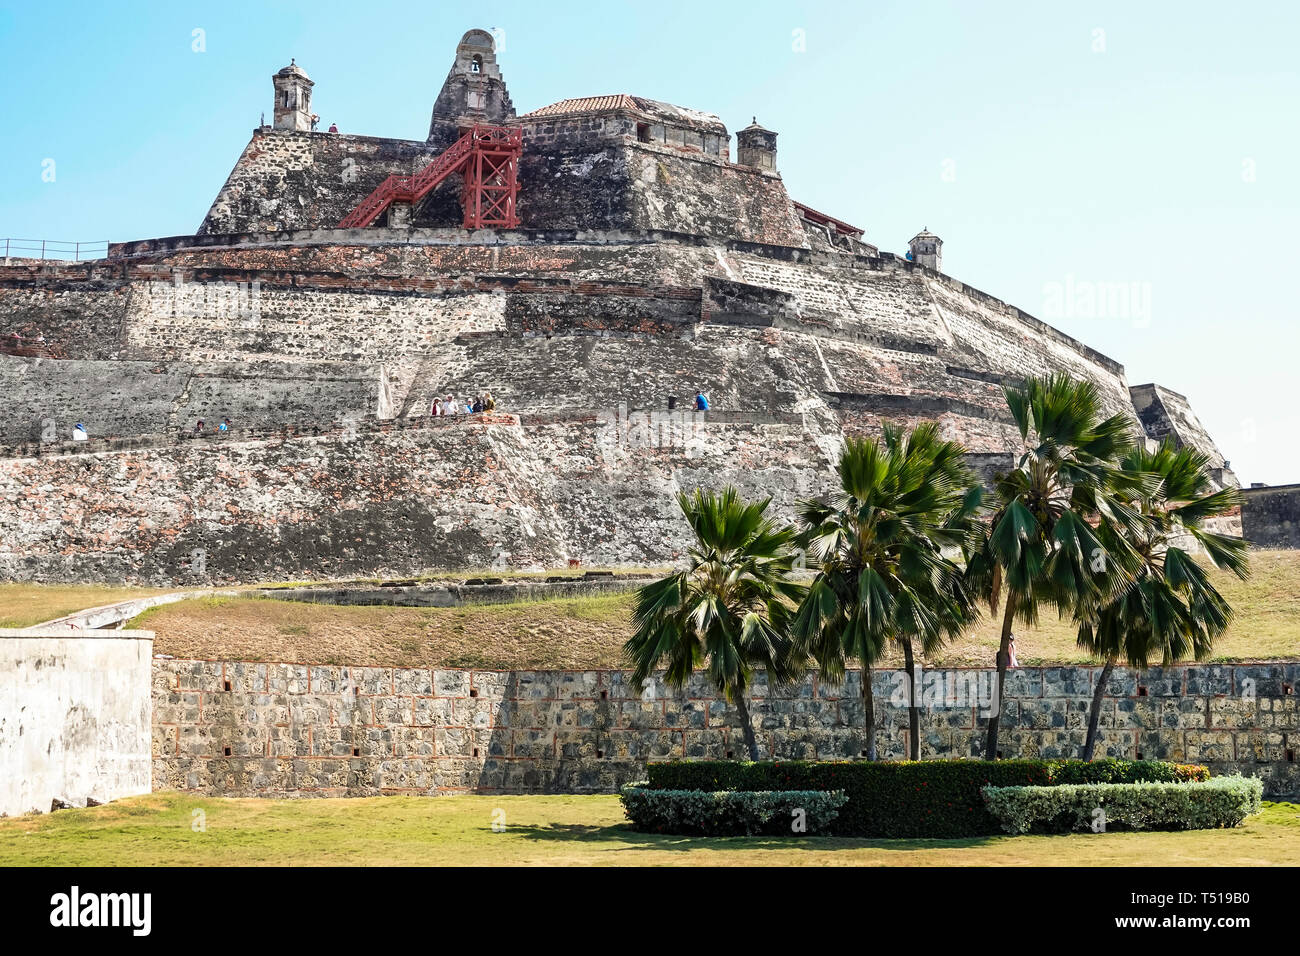 Cartagena Kolumbien, Castillo de San Rocca de Barajas, San Lazaro Hill, historische Festung aus der Kolonialzeit, Weltkulturerbe, Außenansicht, COL190123014 Stockfoto